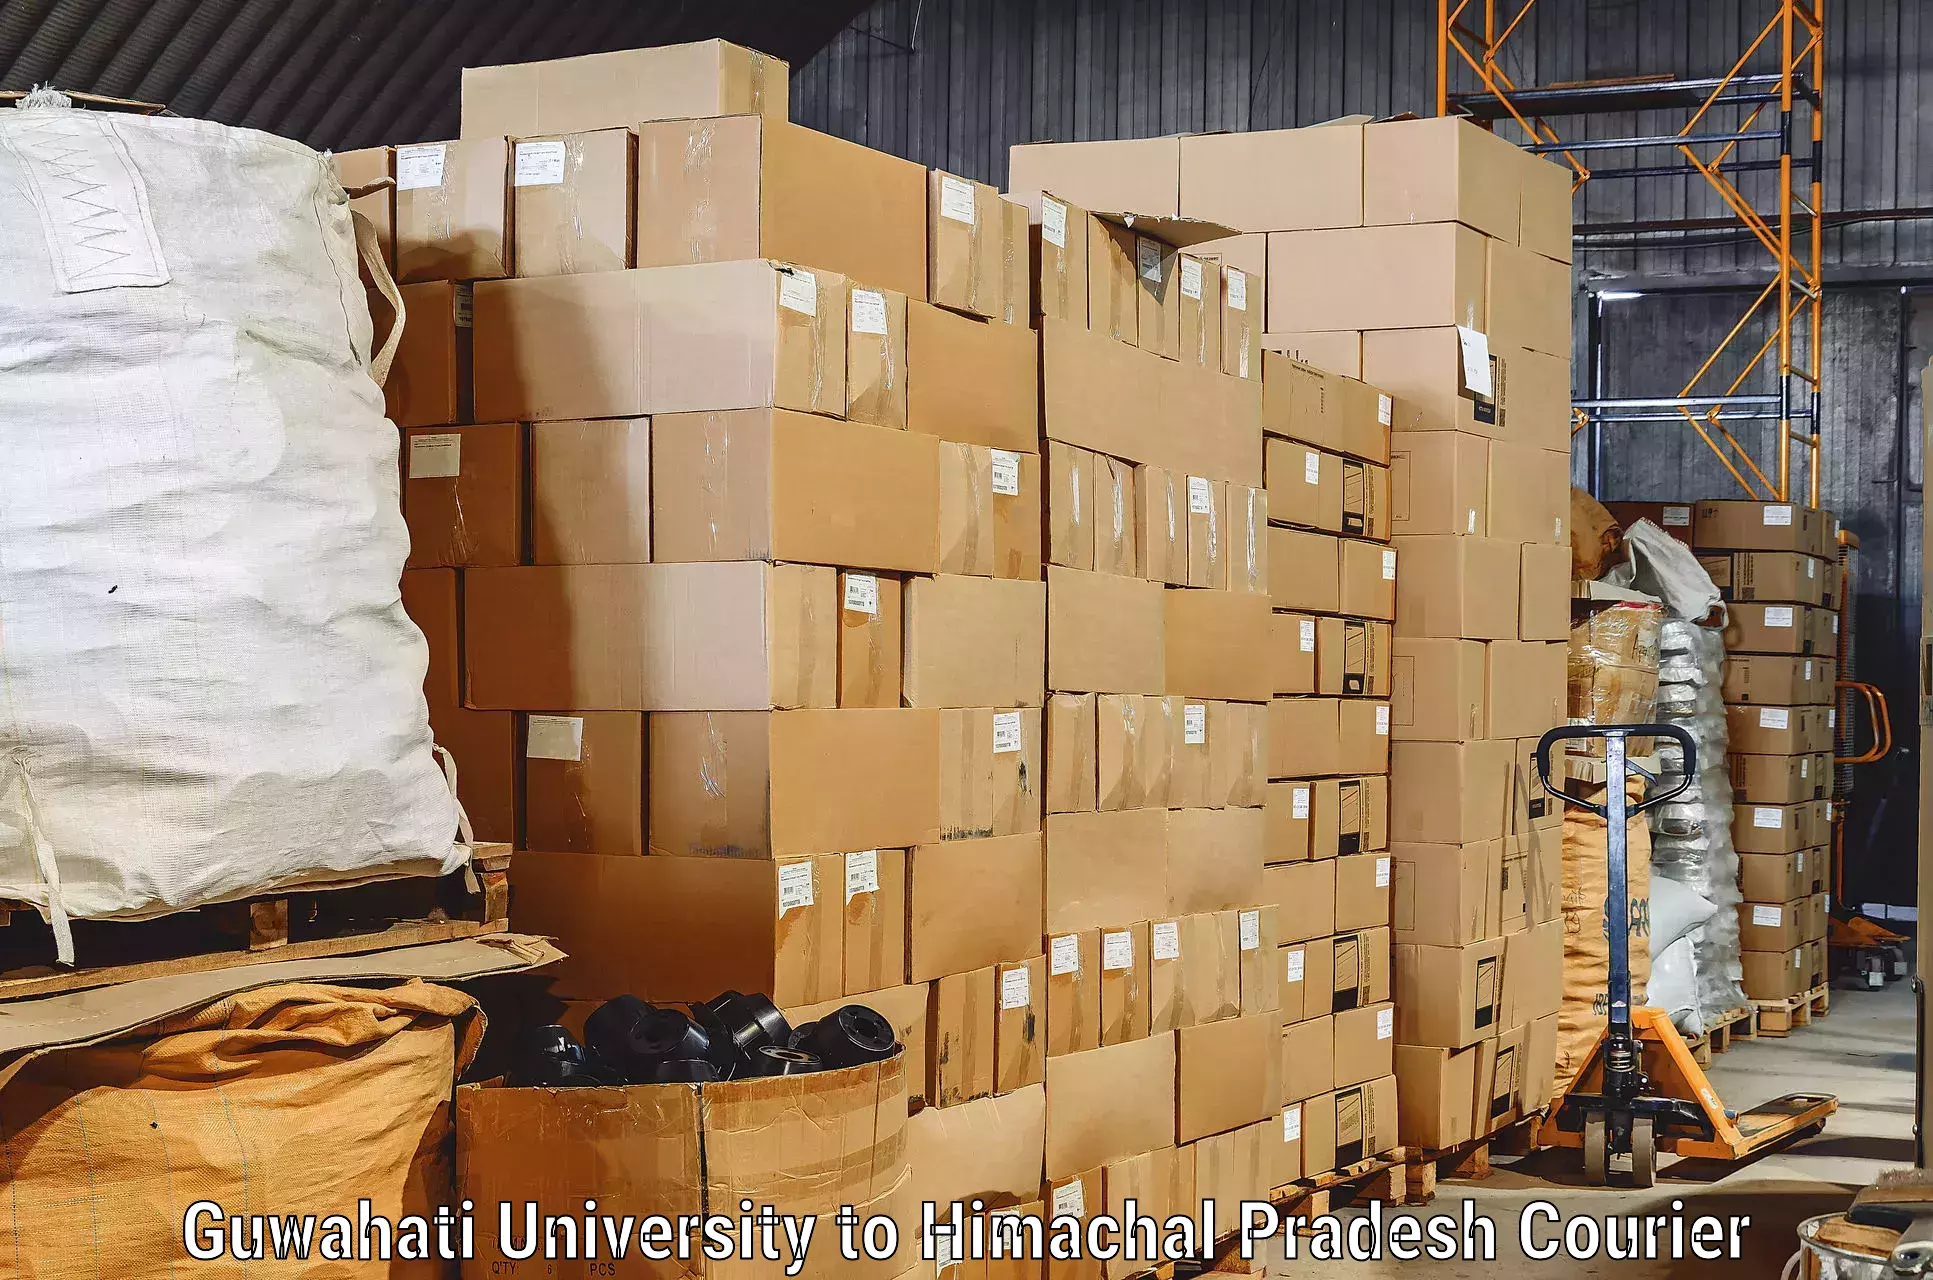 Furniture moving experts Guwahati University to Joginder Nagar